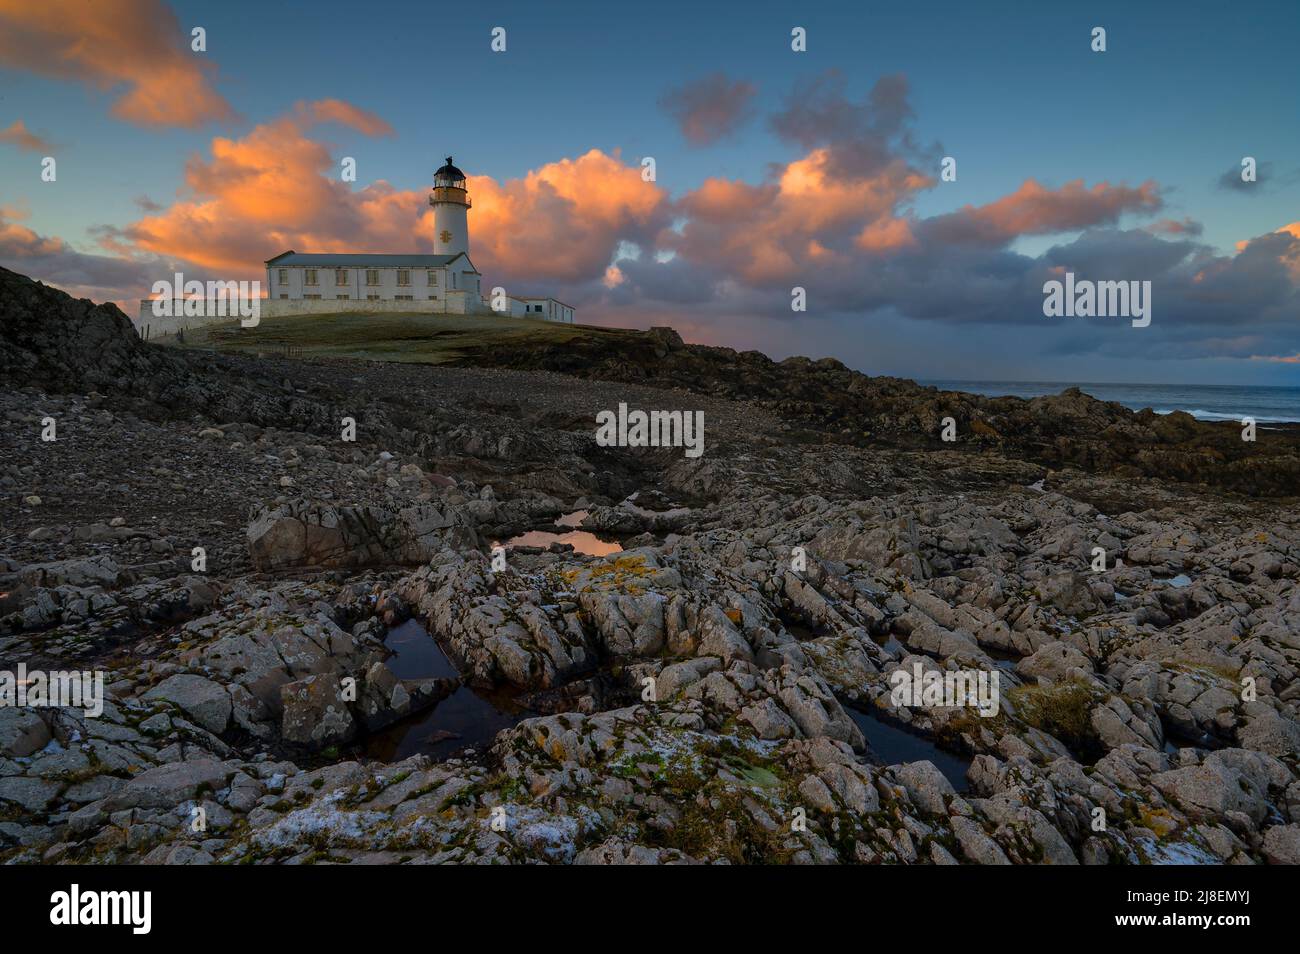 The South lighthouse against a sky illuminated by a sunrise, Fair Isle Stock Photo